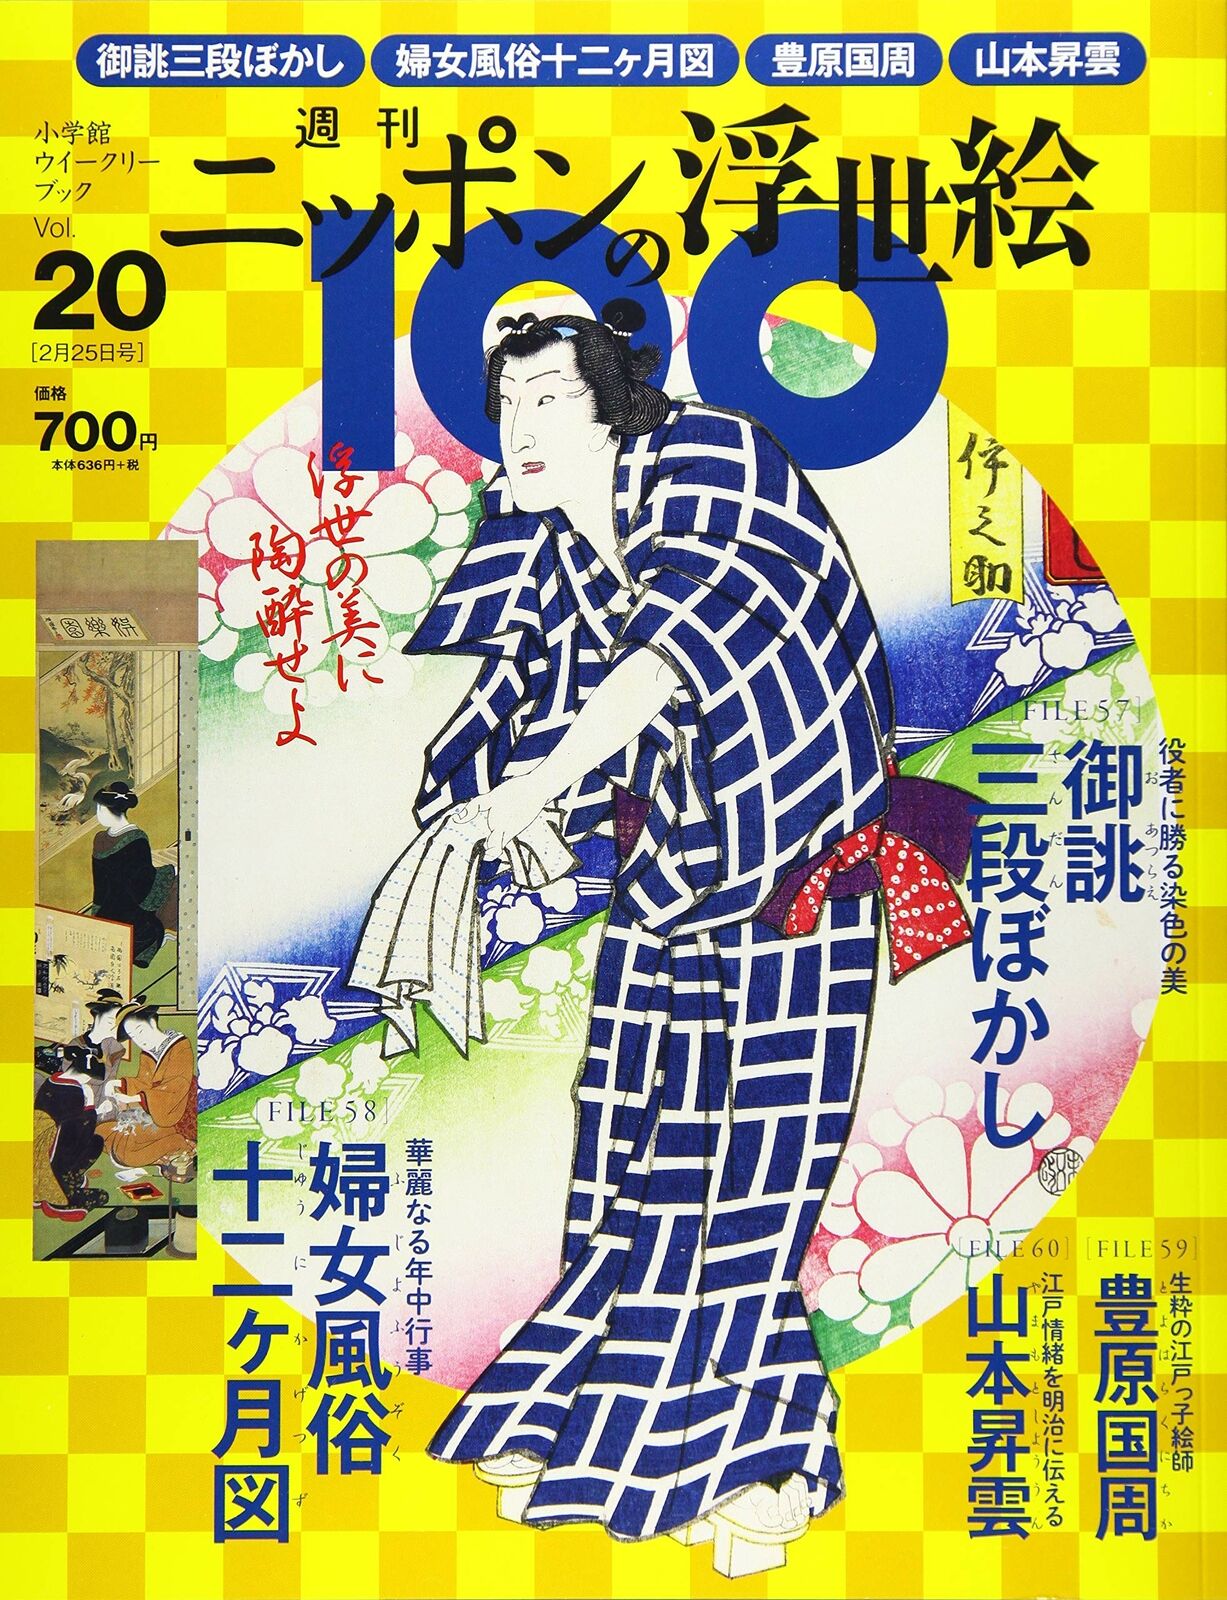 ukiyo-e book ukiyo-e Weekly Nippon Ukiyo-e 100 (20) 2021 2/25 Issue [Magazine]